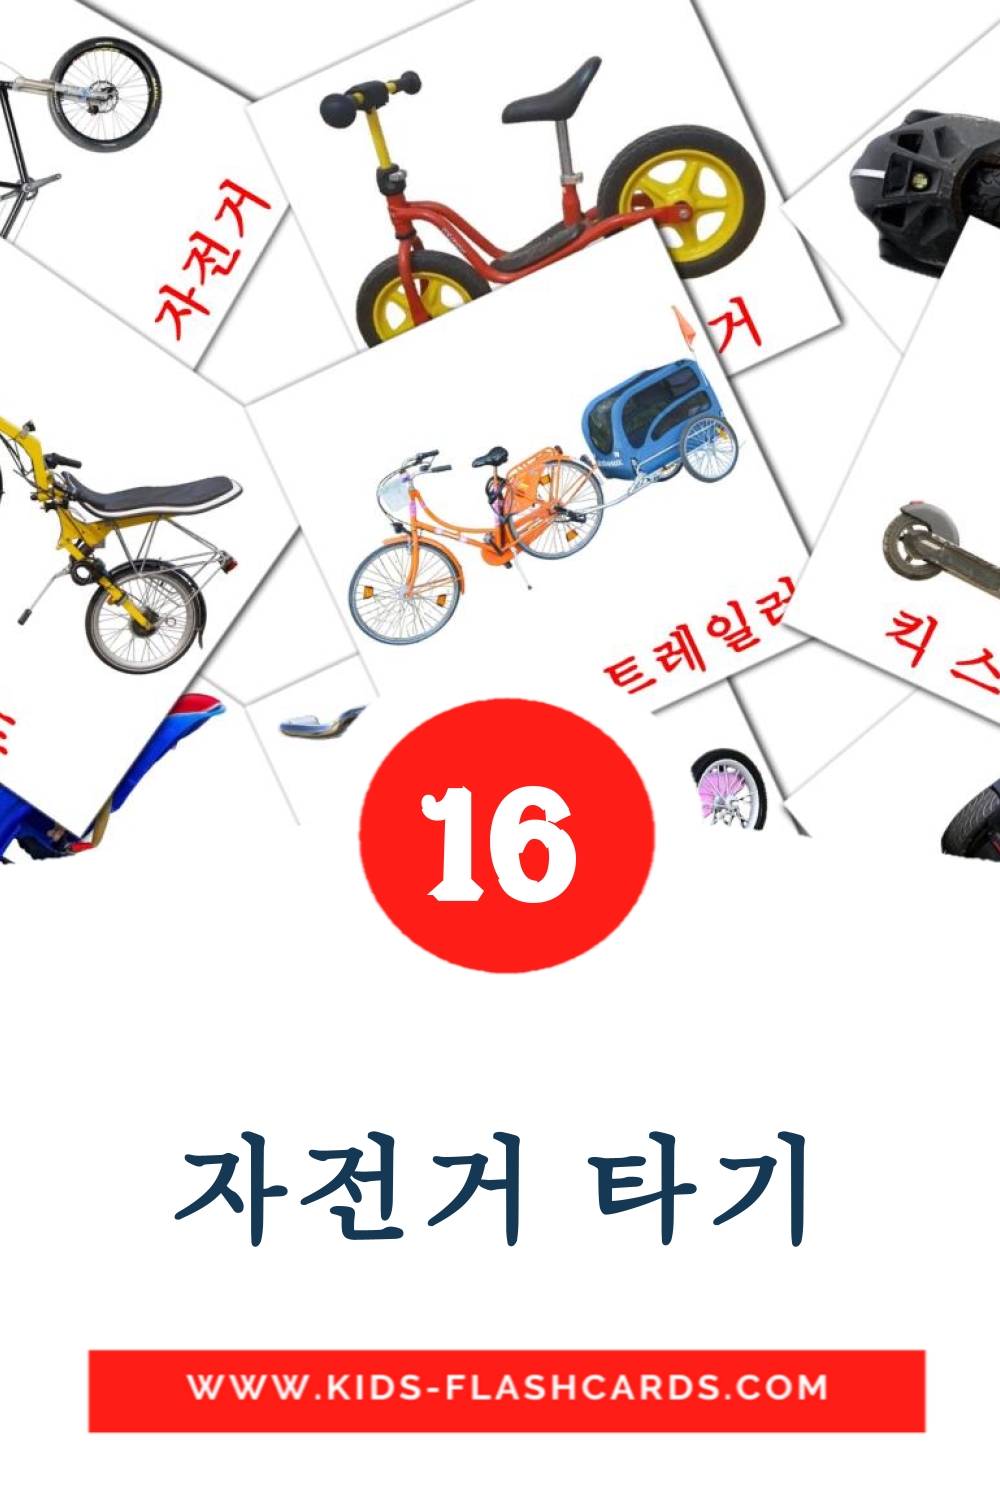 16 자전거 타기 fotokaarten voor kleuters in het koreaanse